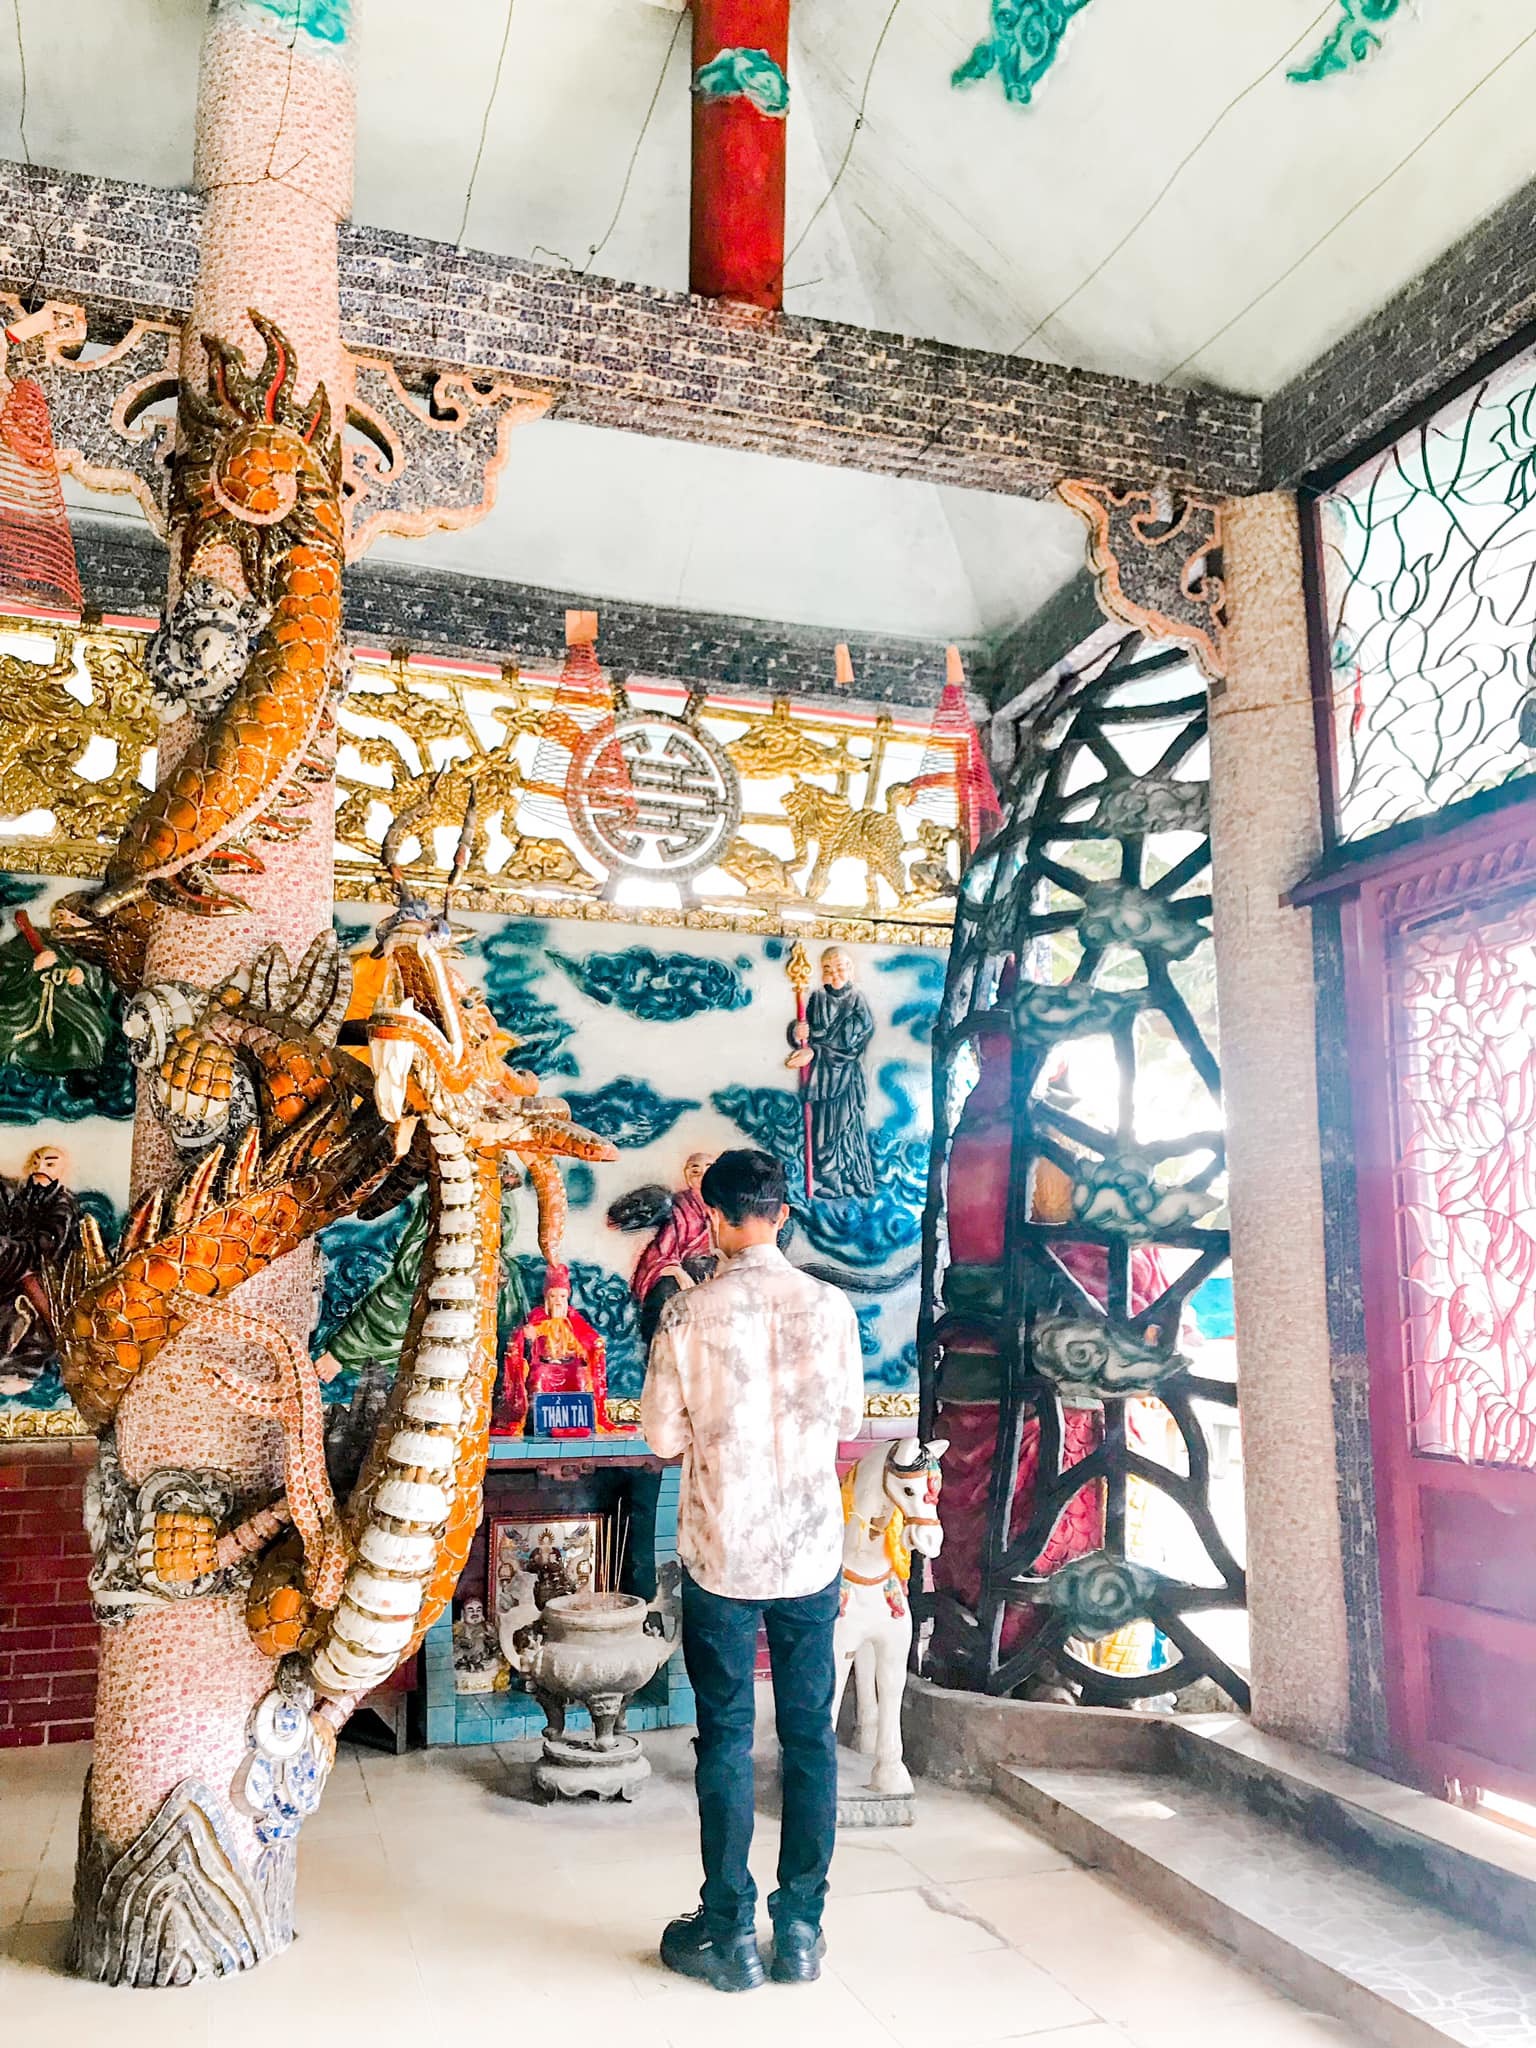 Ngôi miếu 300 năm "lênh đênh" giữa sông Sài Gòn, khách xếp hàng chờ đò đi tìm lịch sử "kì bí" - 3